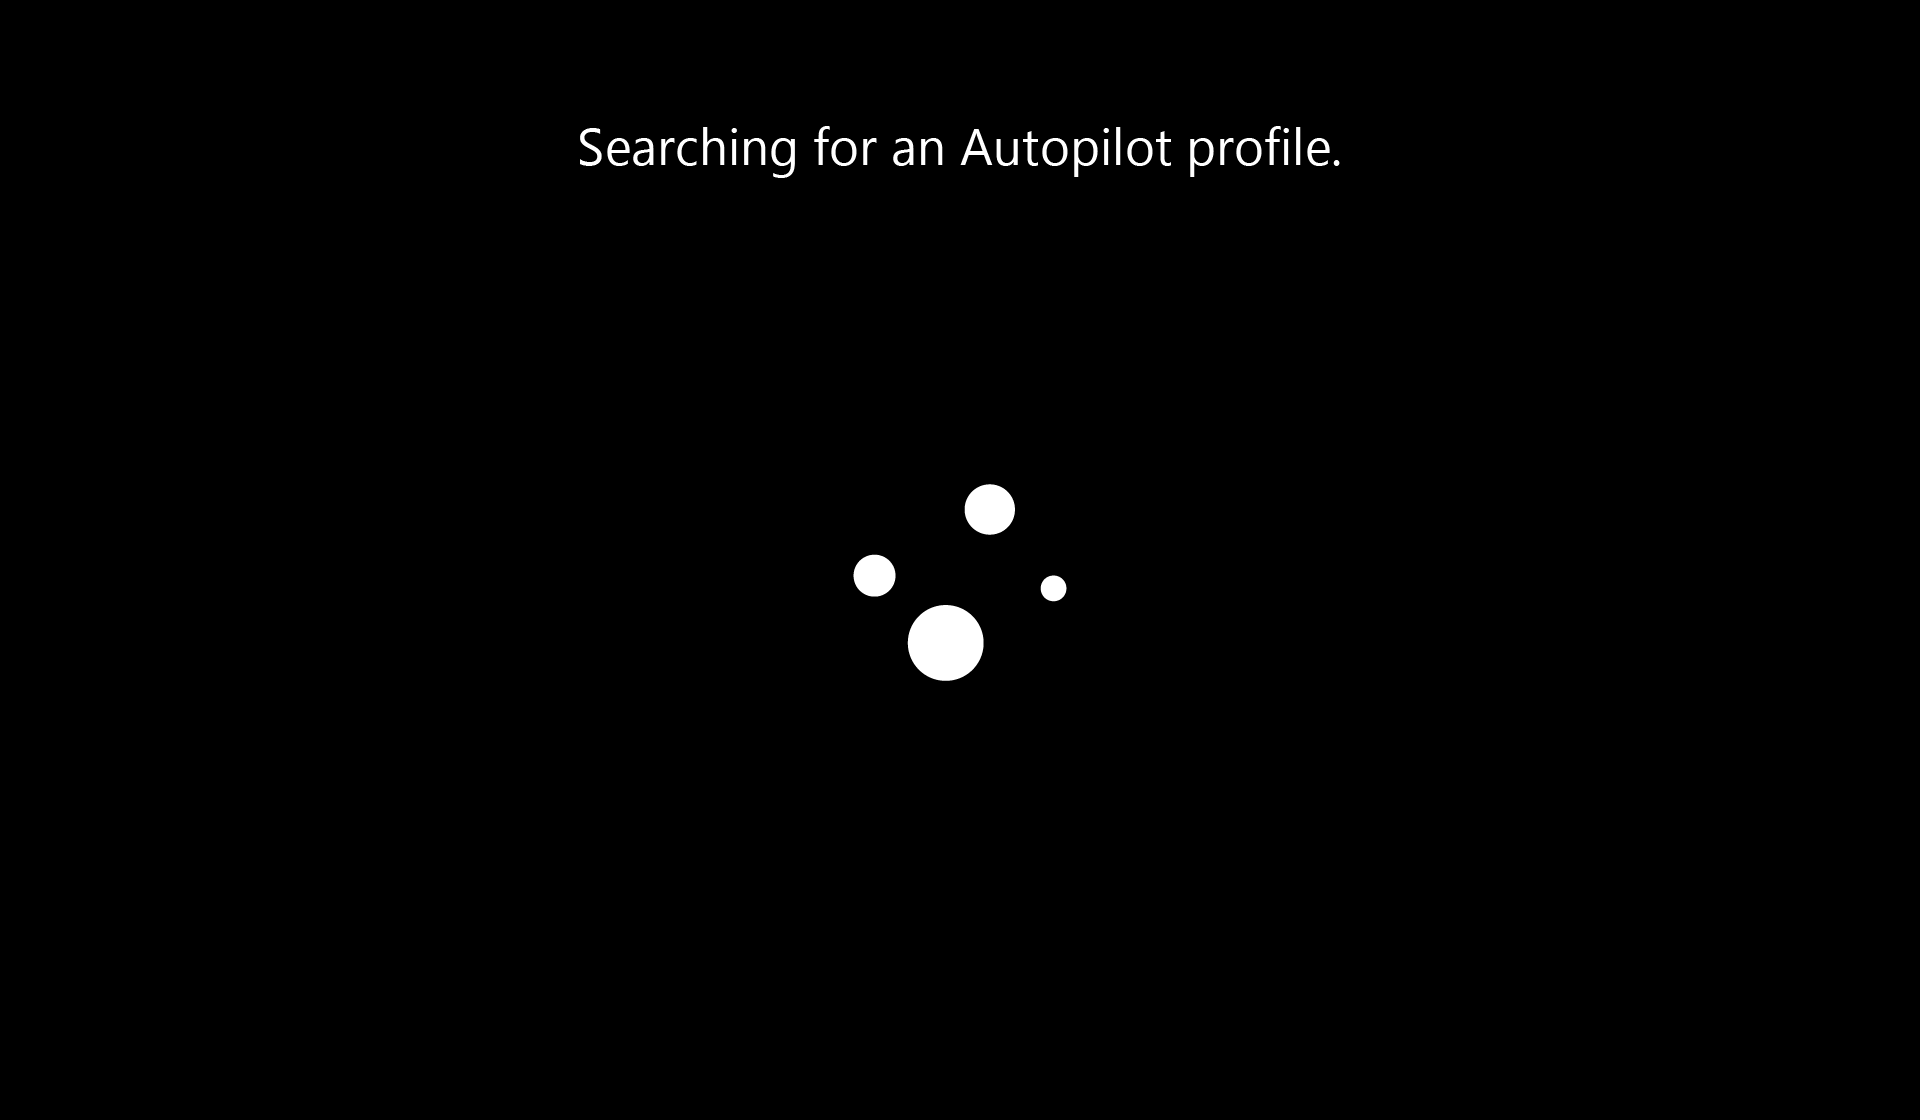 Wyszukiwanie profilu rozwiązania Autopilot.